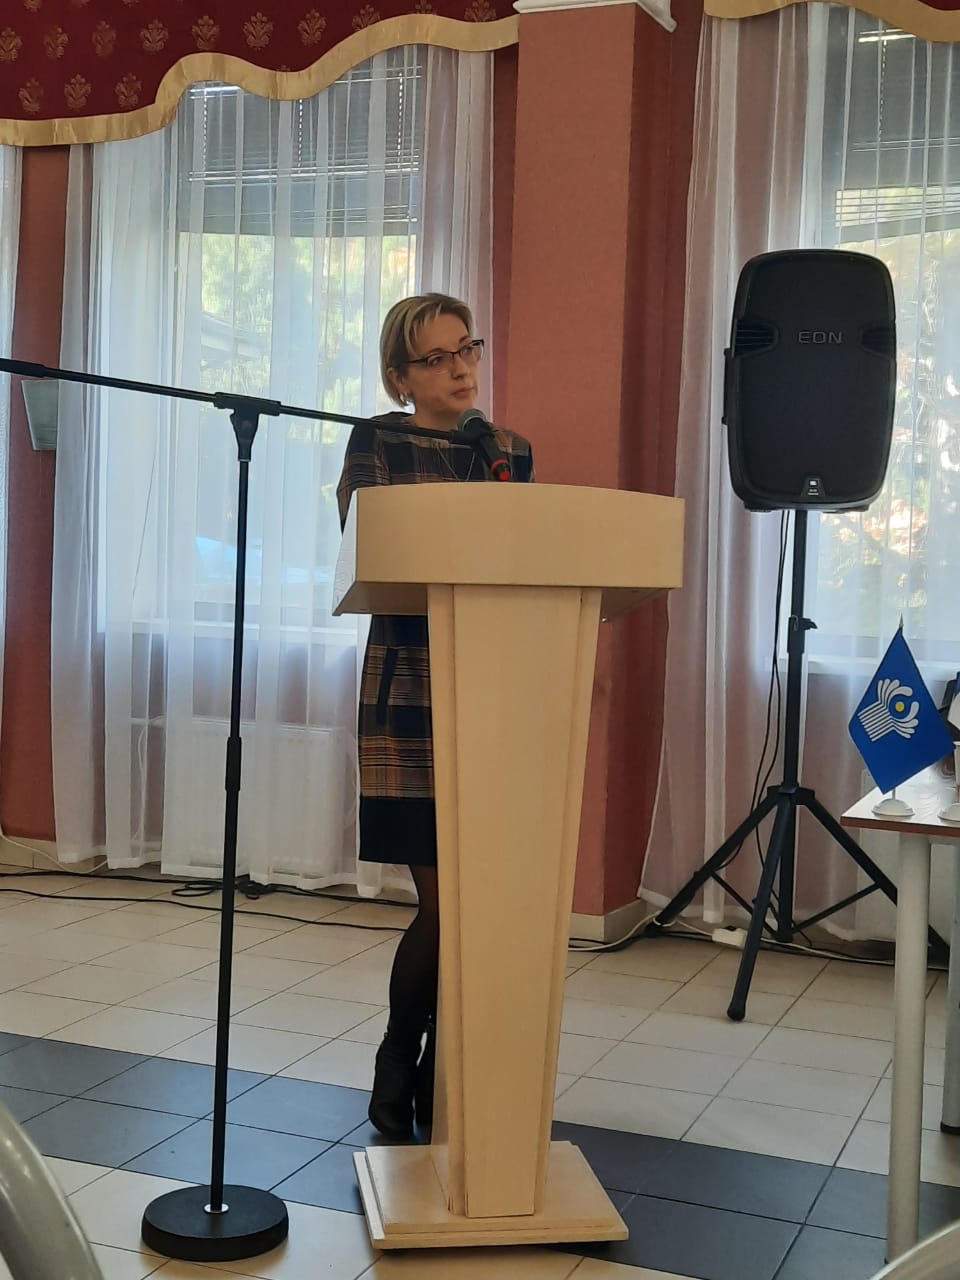 Международный симпозиум по актуальным проблемам перевода художественной литературы стран СНГ, Балтии и Грузии завершился в Крыму